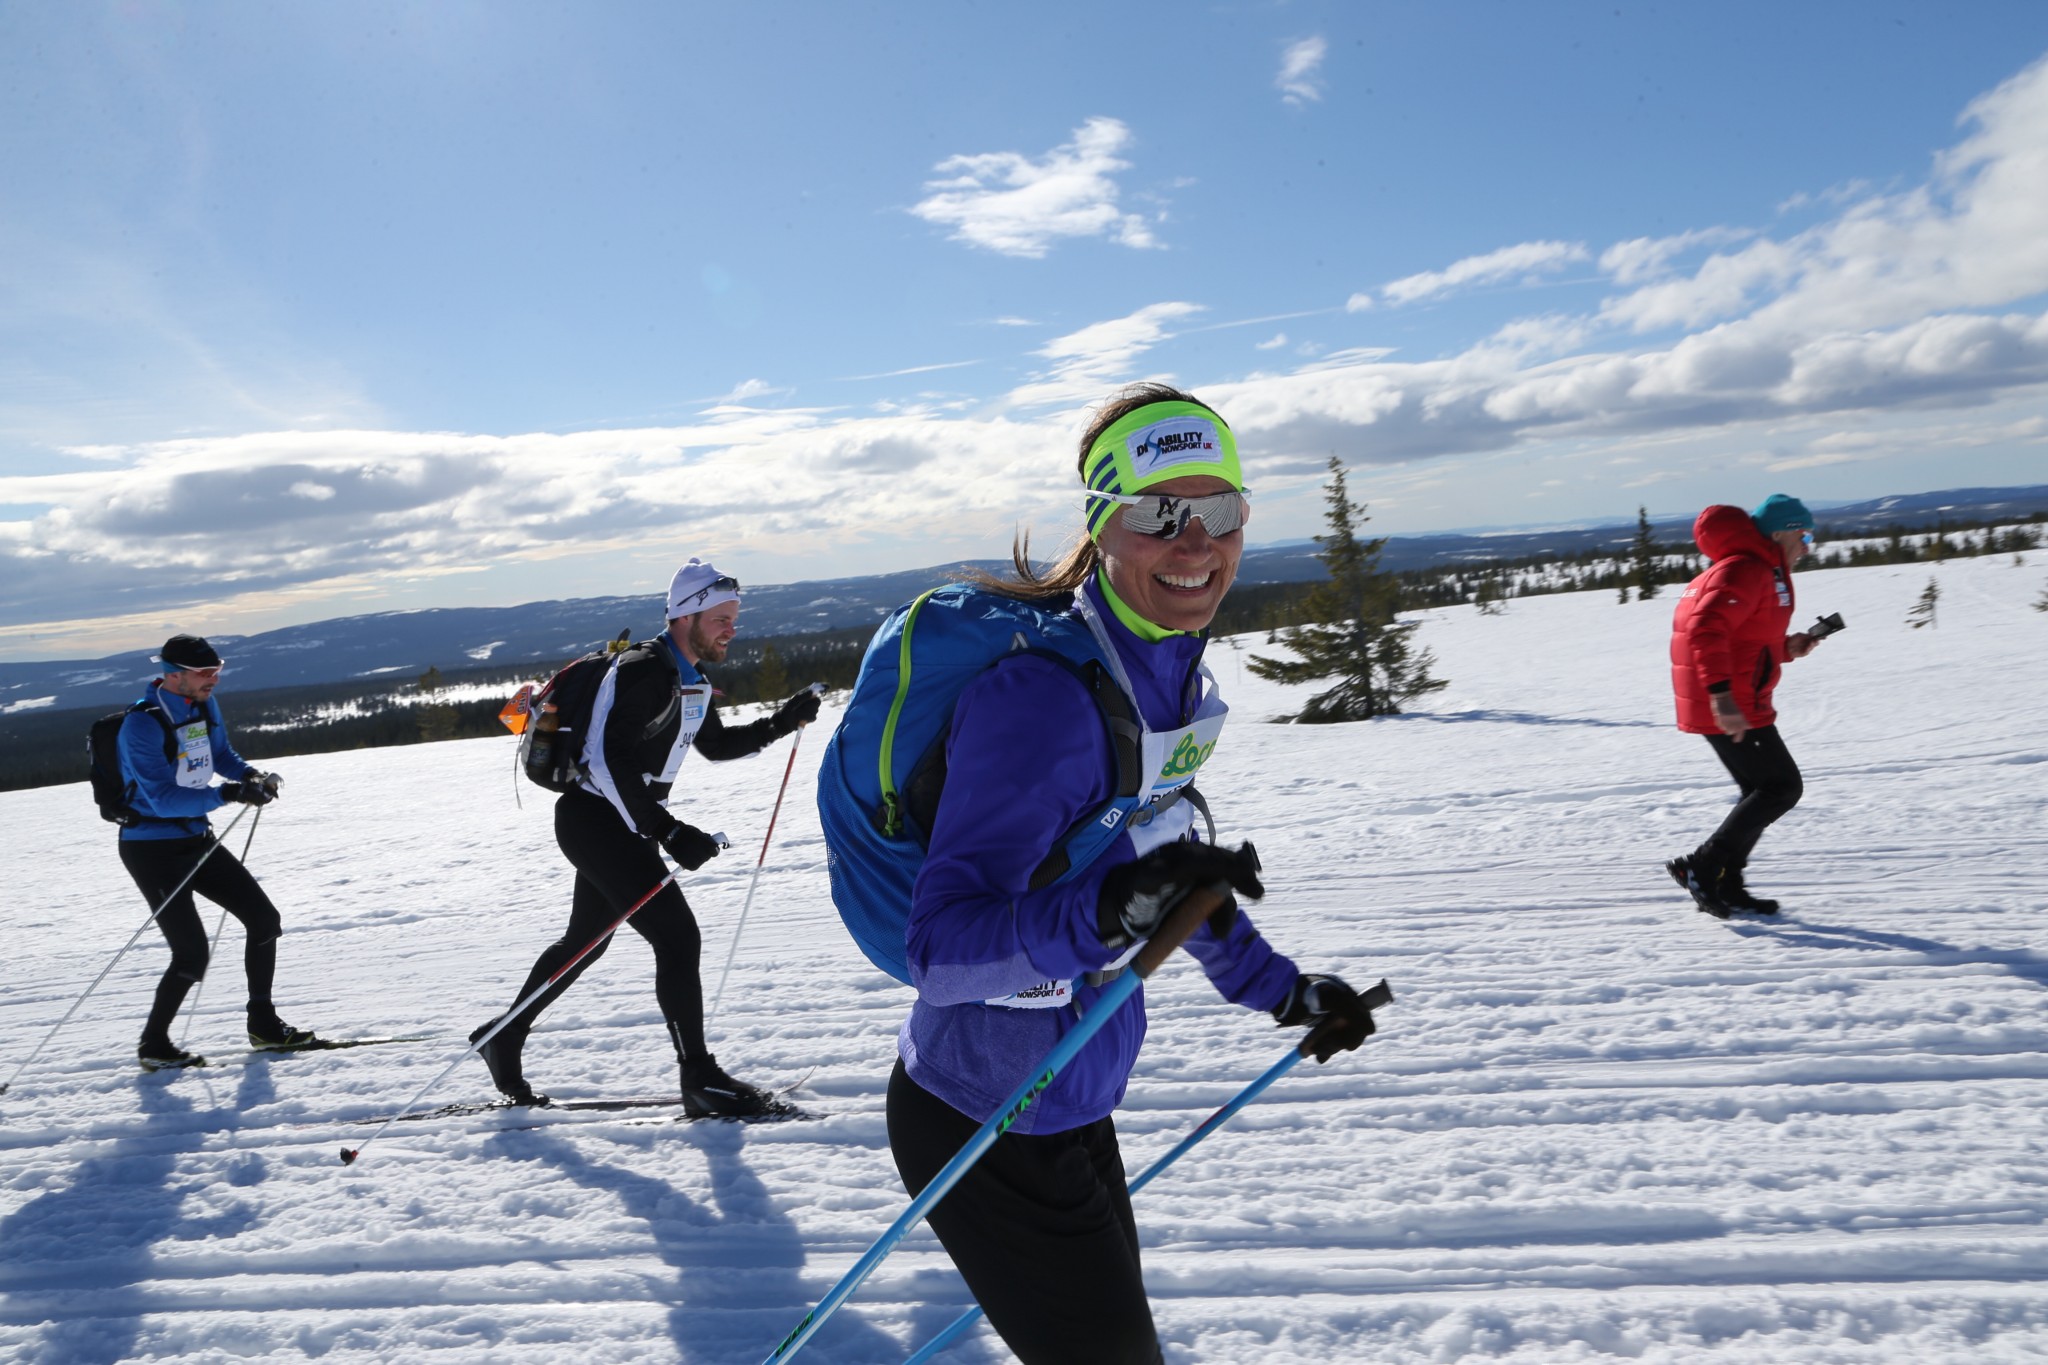 Pippa Middleton in 54km Ski Race for Charity